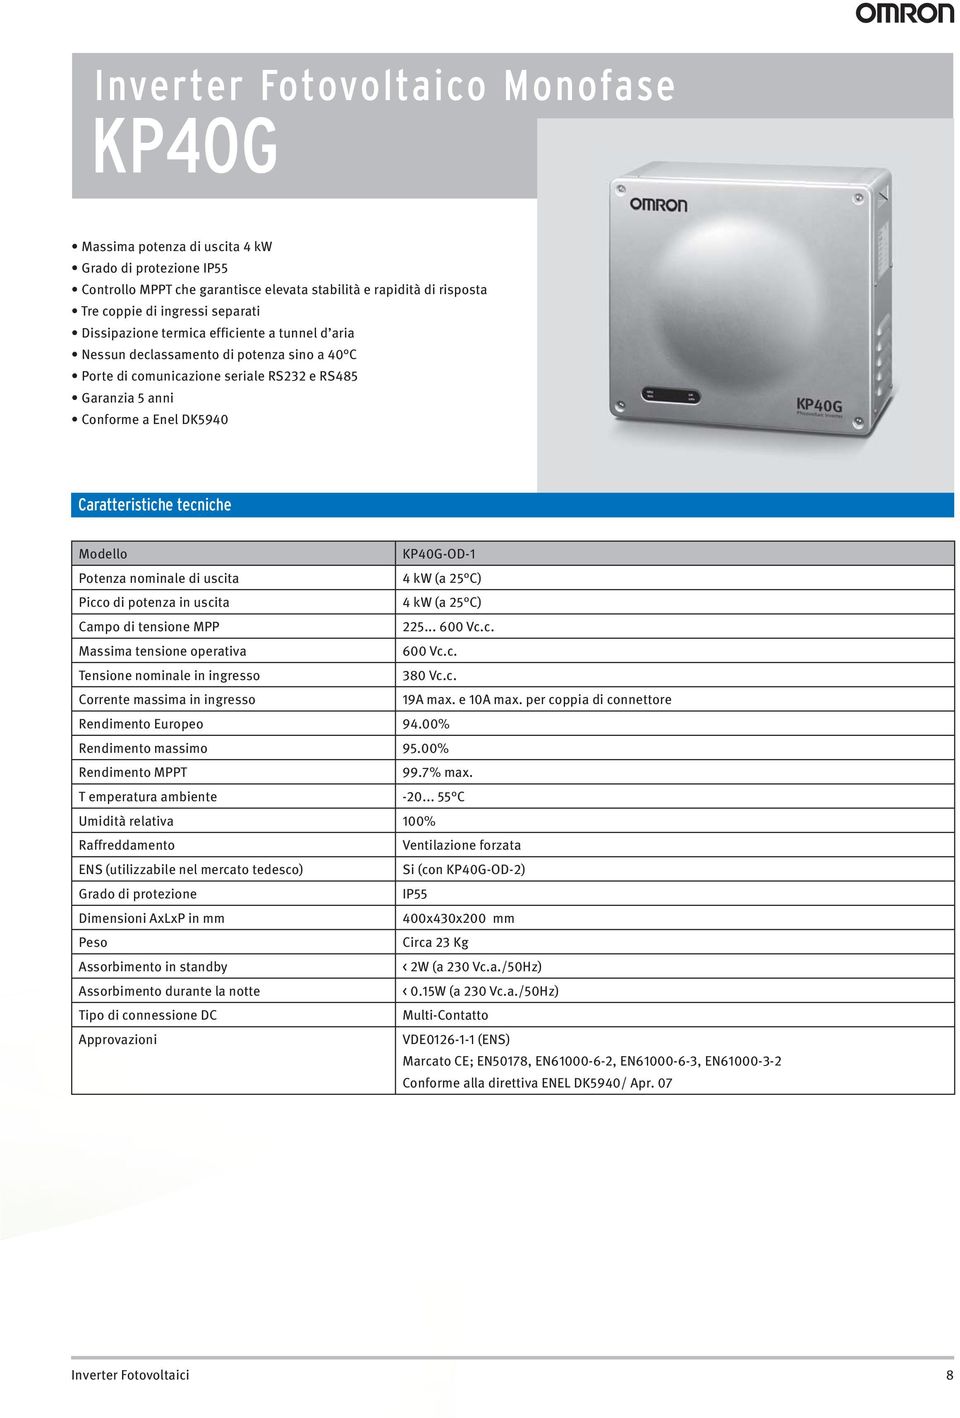 T emperatura ambiente 100% Ventilazione forzata 400x430x200 mm Assorbimento in